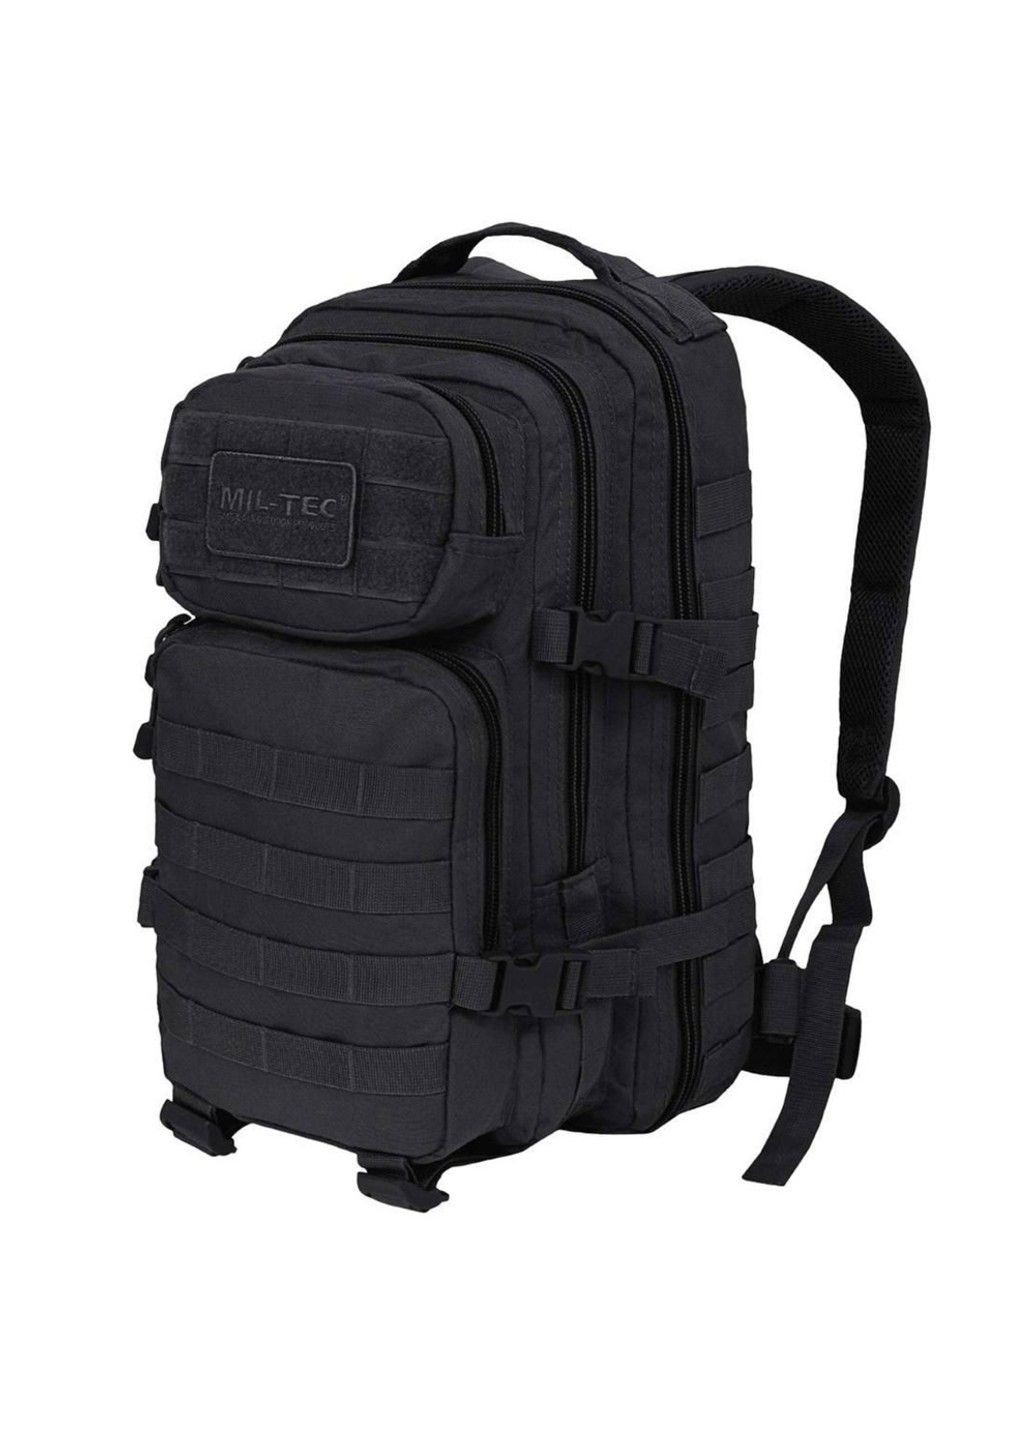 Влагозащищенный рюкзак 20 л / Ранец с креплением Molle черный Mil-Tec (293269465)